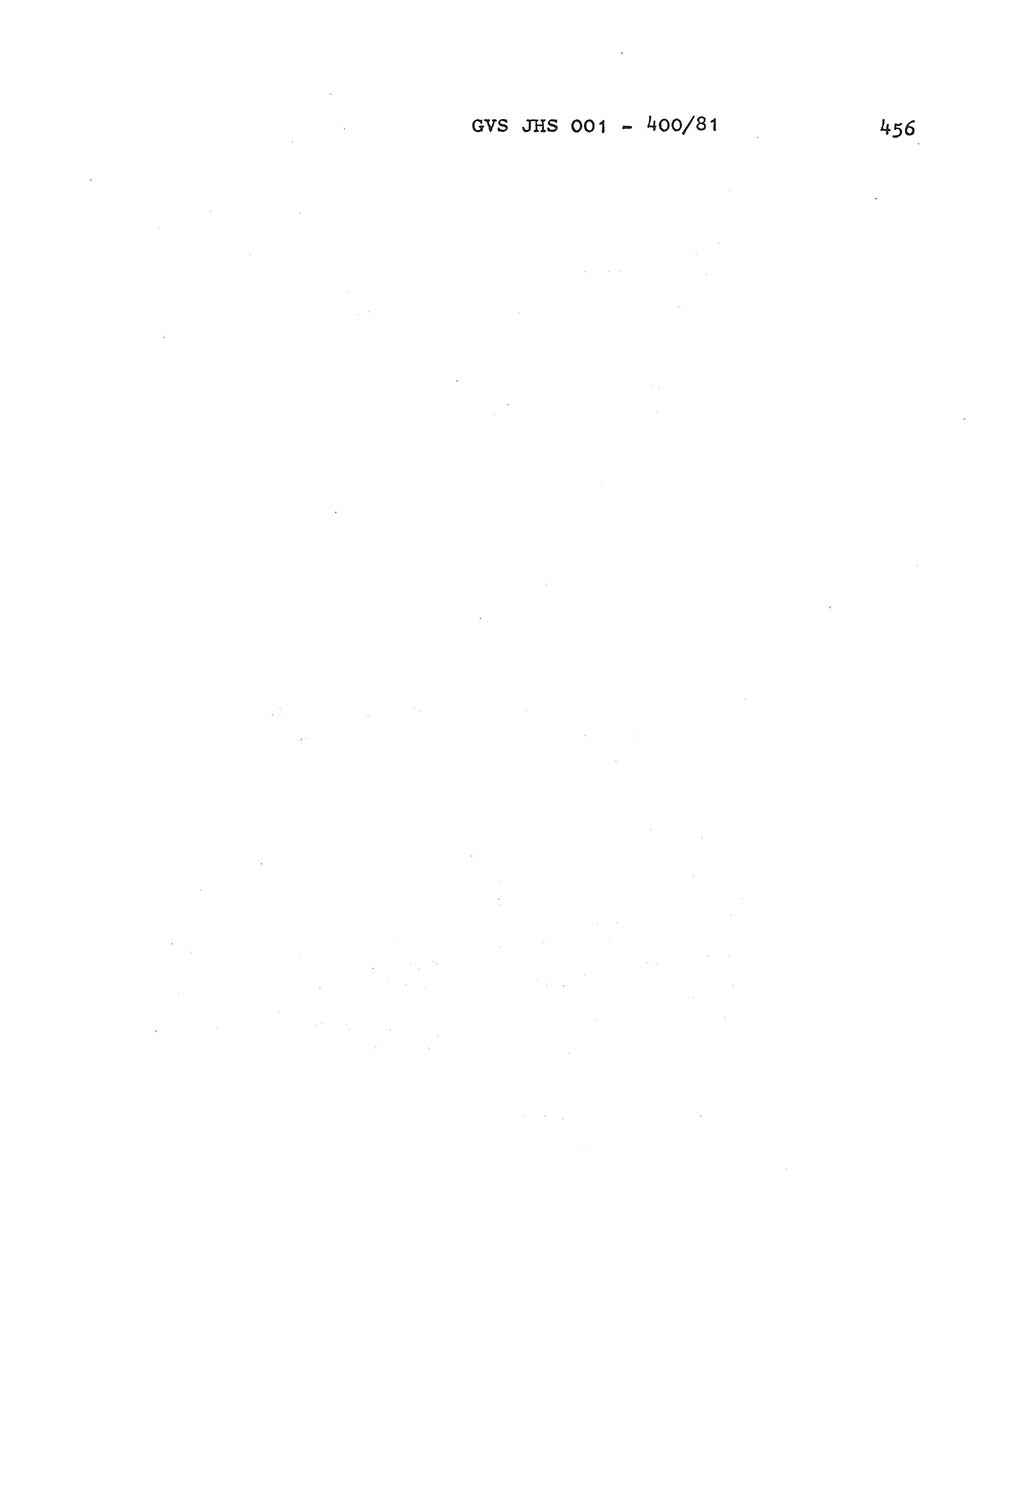 Wörterbuch der politisch-operativen Arbeit, Ministerium für Staatssicherheit (MfS) [Deutsche Demokratische Republik (DDR)], Juristische Hochschule (JHS), Geheime Verschlußsache (GVS) o001-400/81, Potsdam 1985, Blatt 456 (Wb. pol.-op. Arb. MfS DDR JHS GVS o001-400/81 1985, Bl. 456)